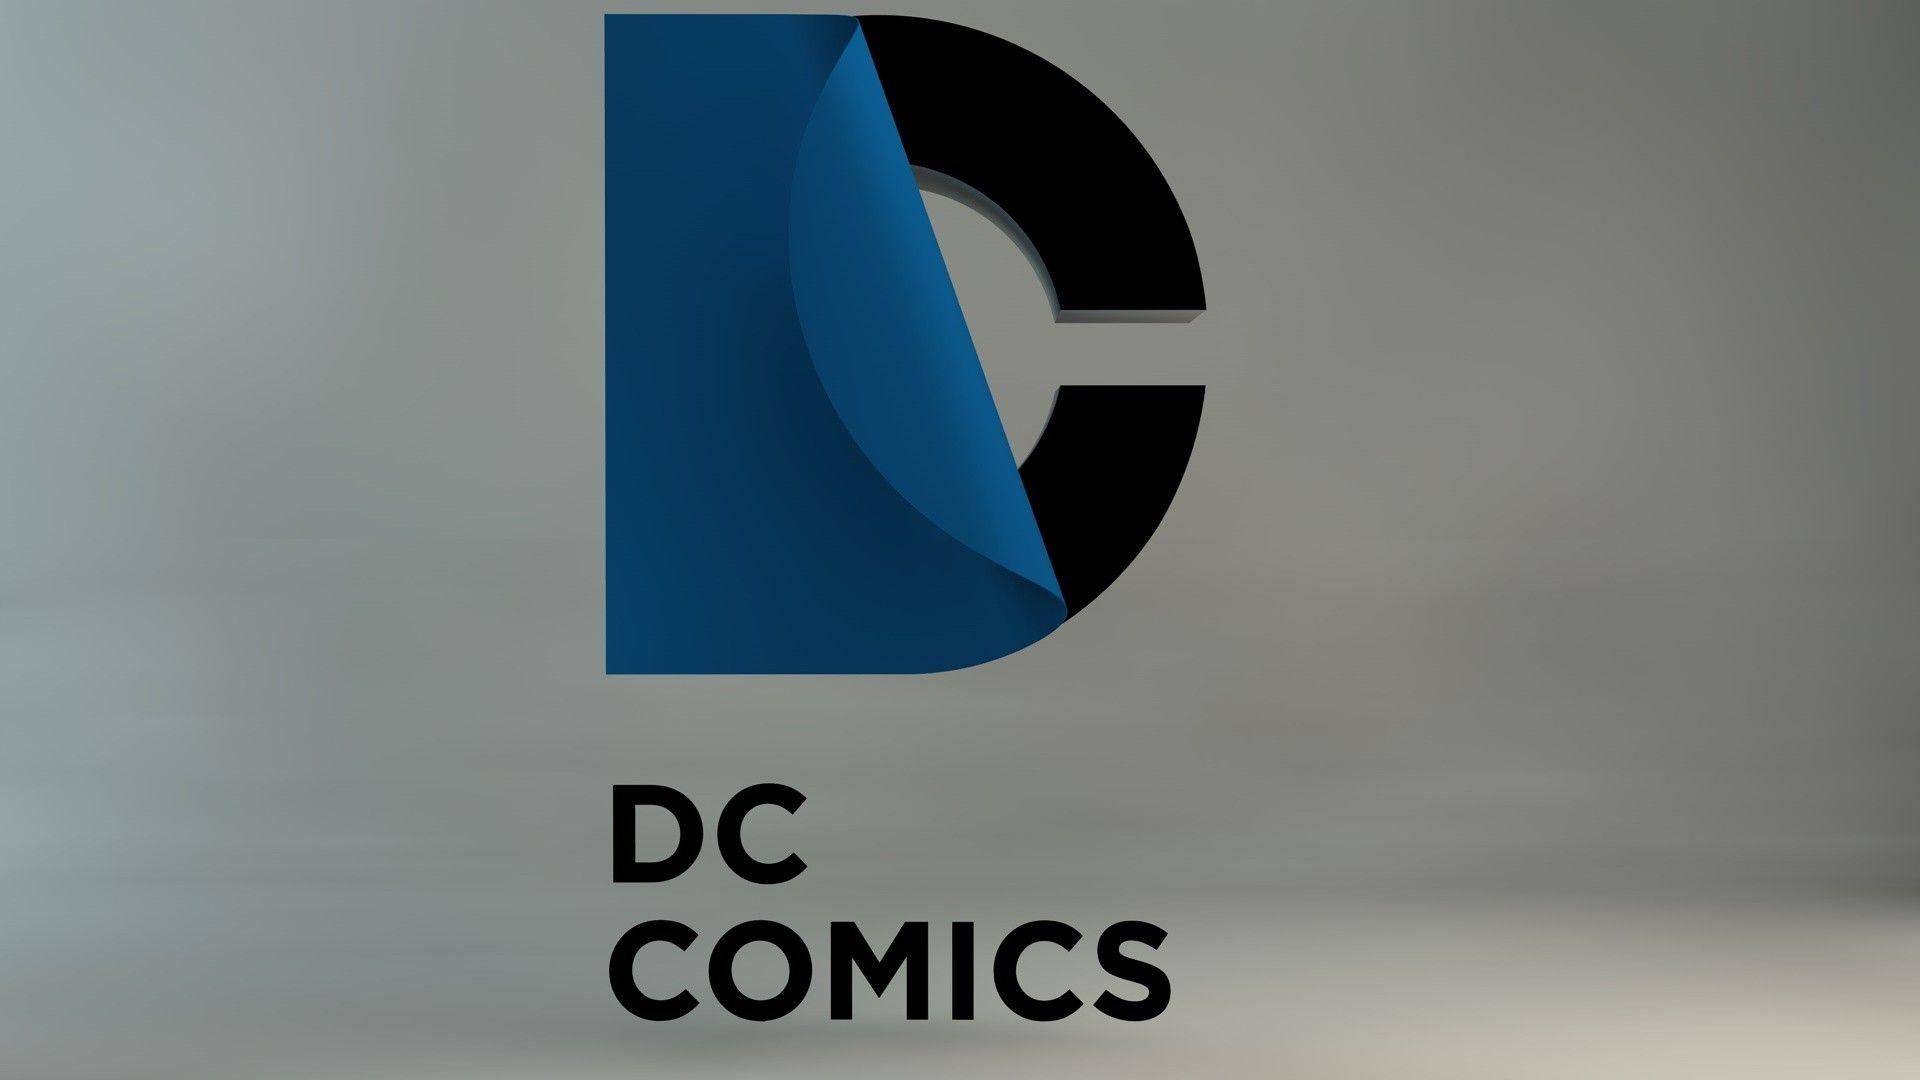 Simply: DC DC Comics comics logos desktop bakcgrounds